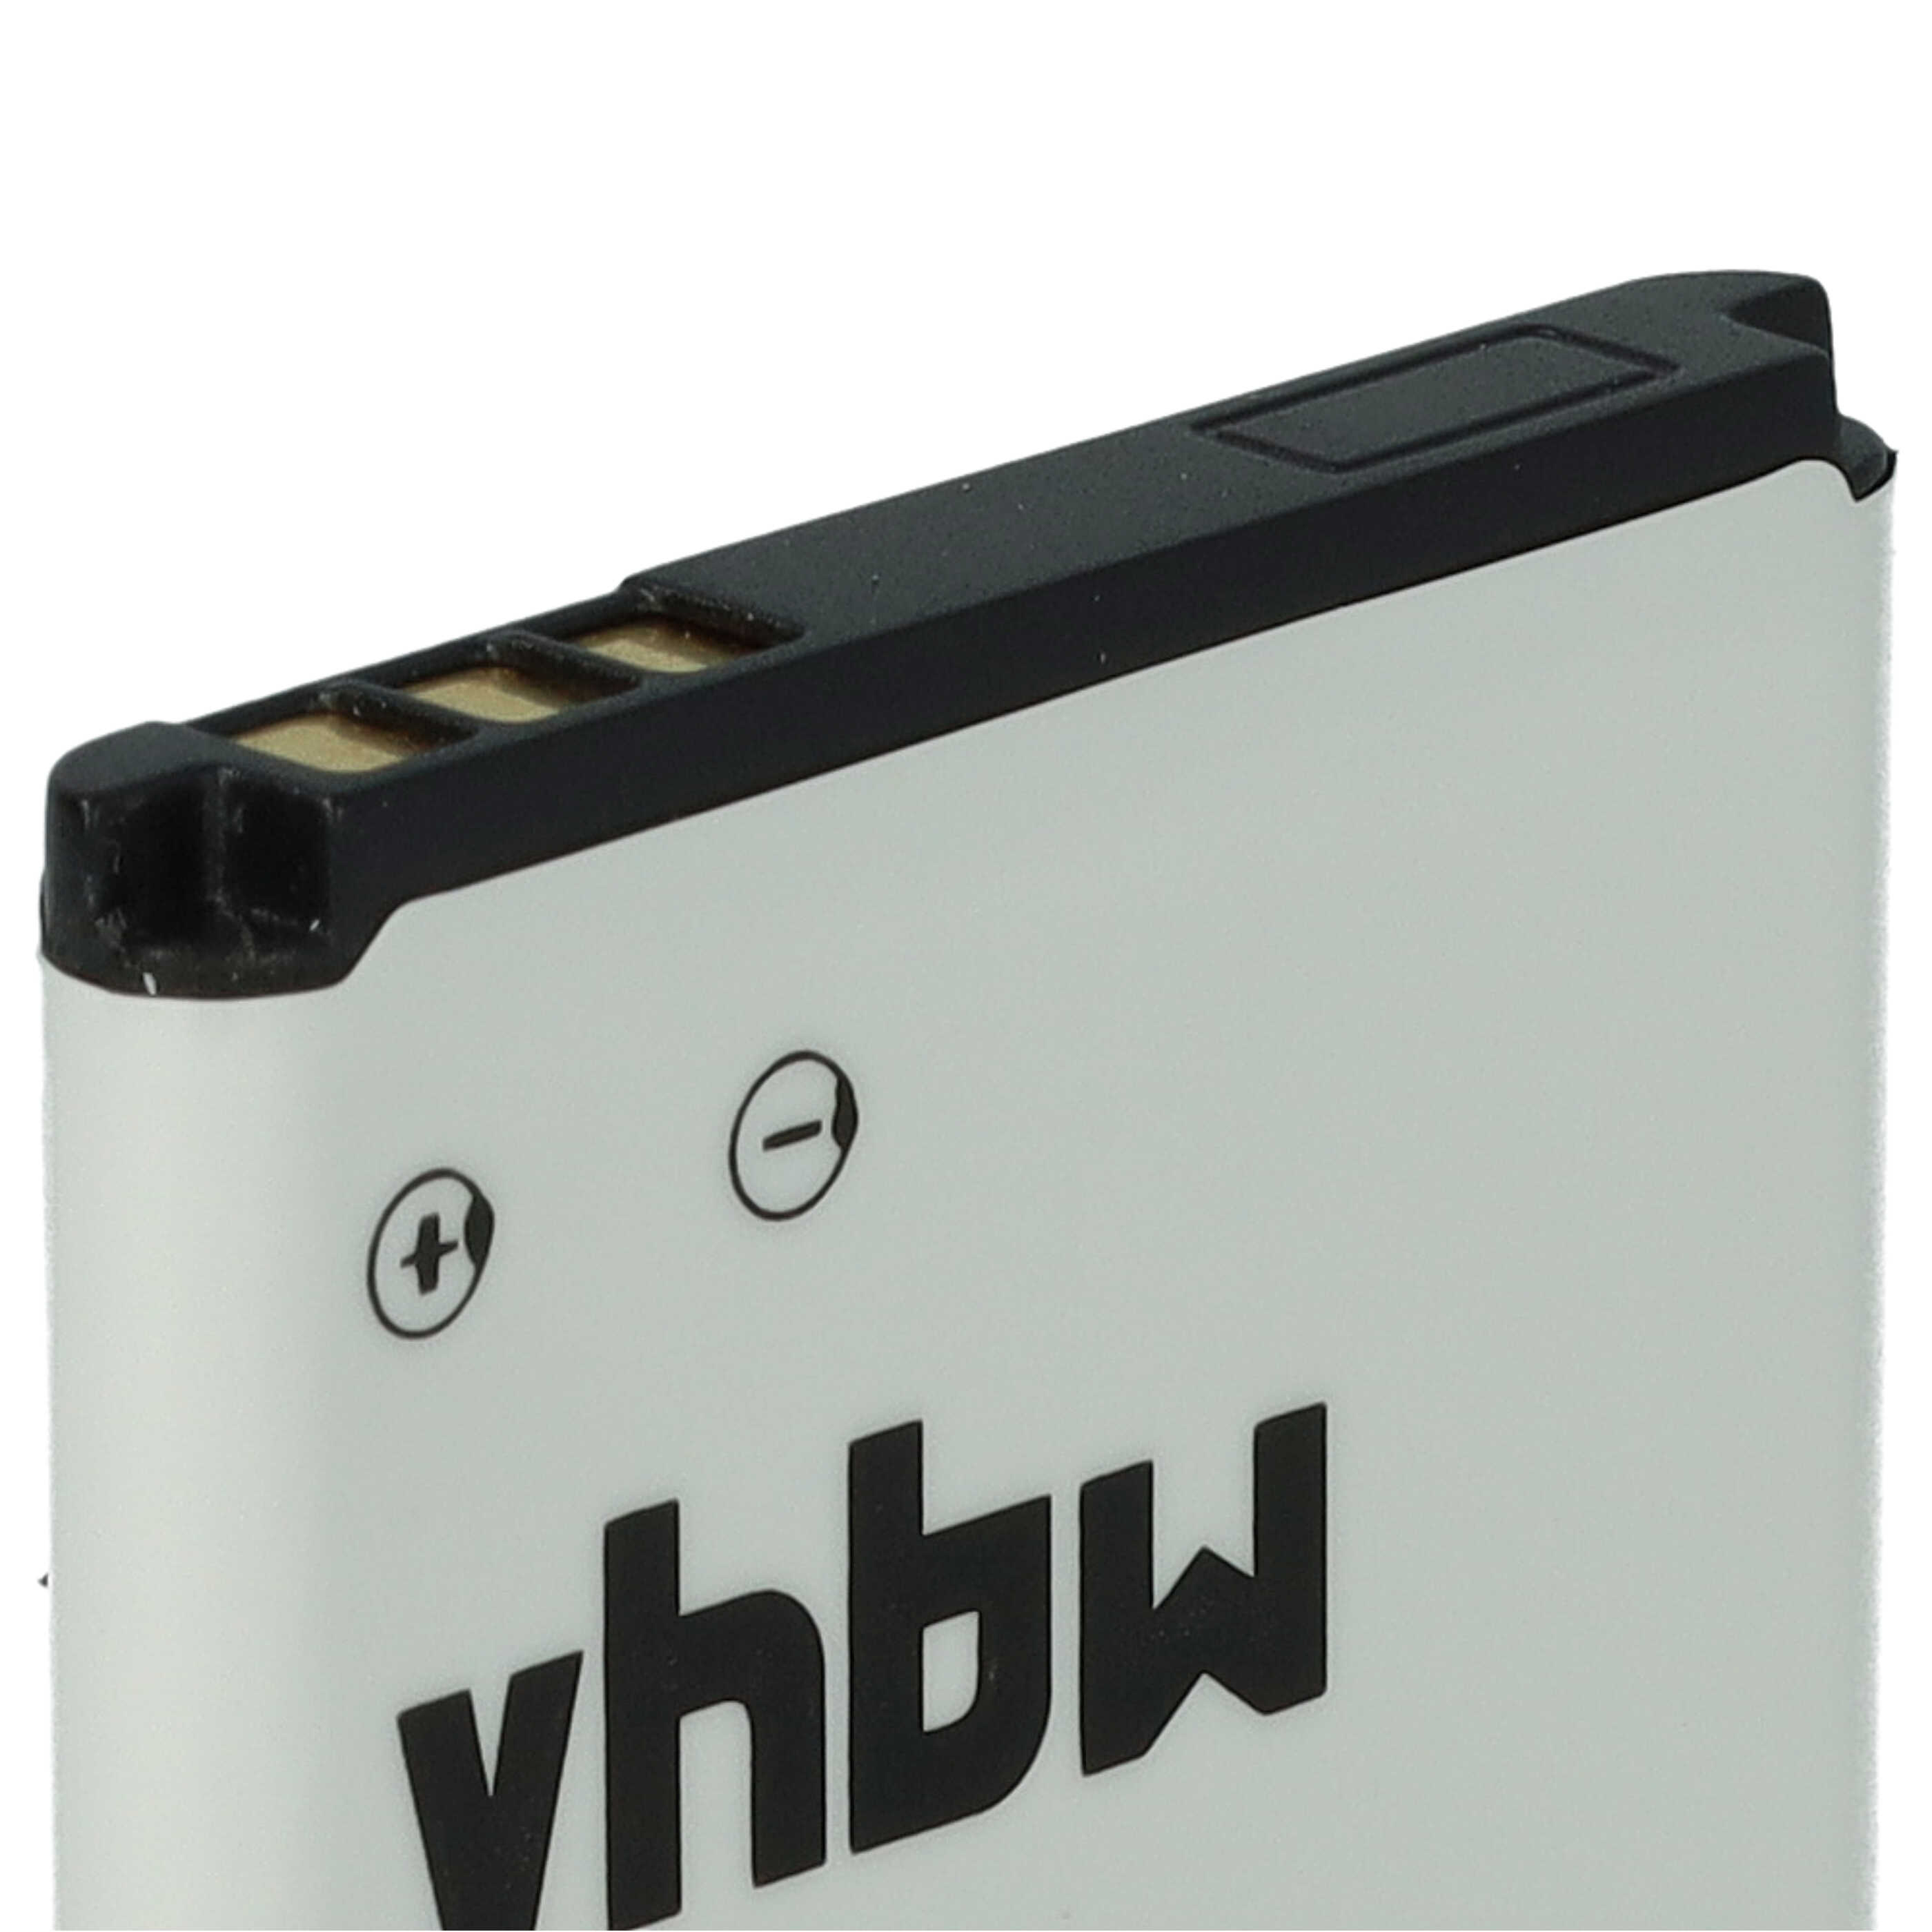 Batterie remplace Gigaset V30145-K1310-X470 pour téléphone portable senior - 800mAh, 3,7V, Li-ion